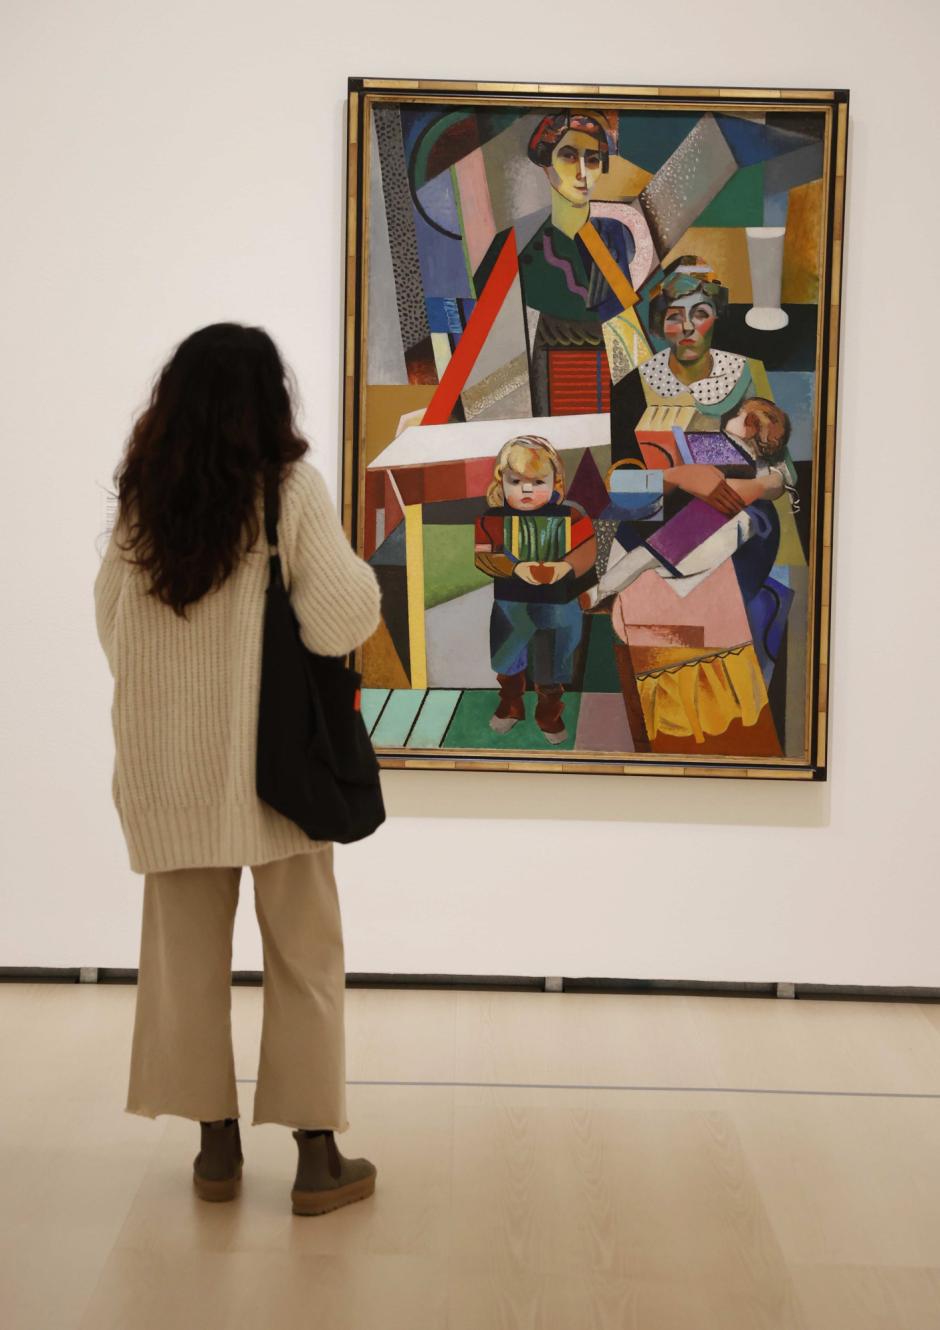 Una mujer observa uno de los cuadros que forma parte de la exposición "Del Fauvismo al Surrealismo: obras maestras del Musée d'Art Moderne de Paris"